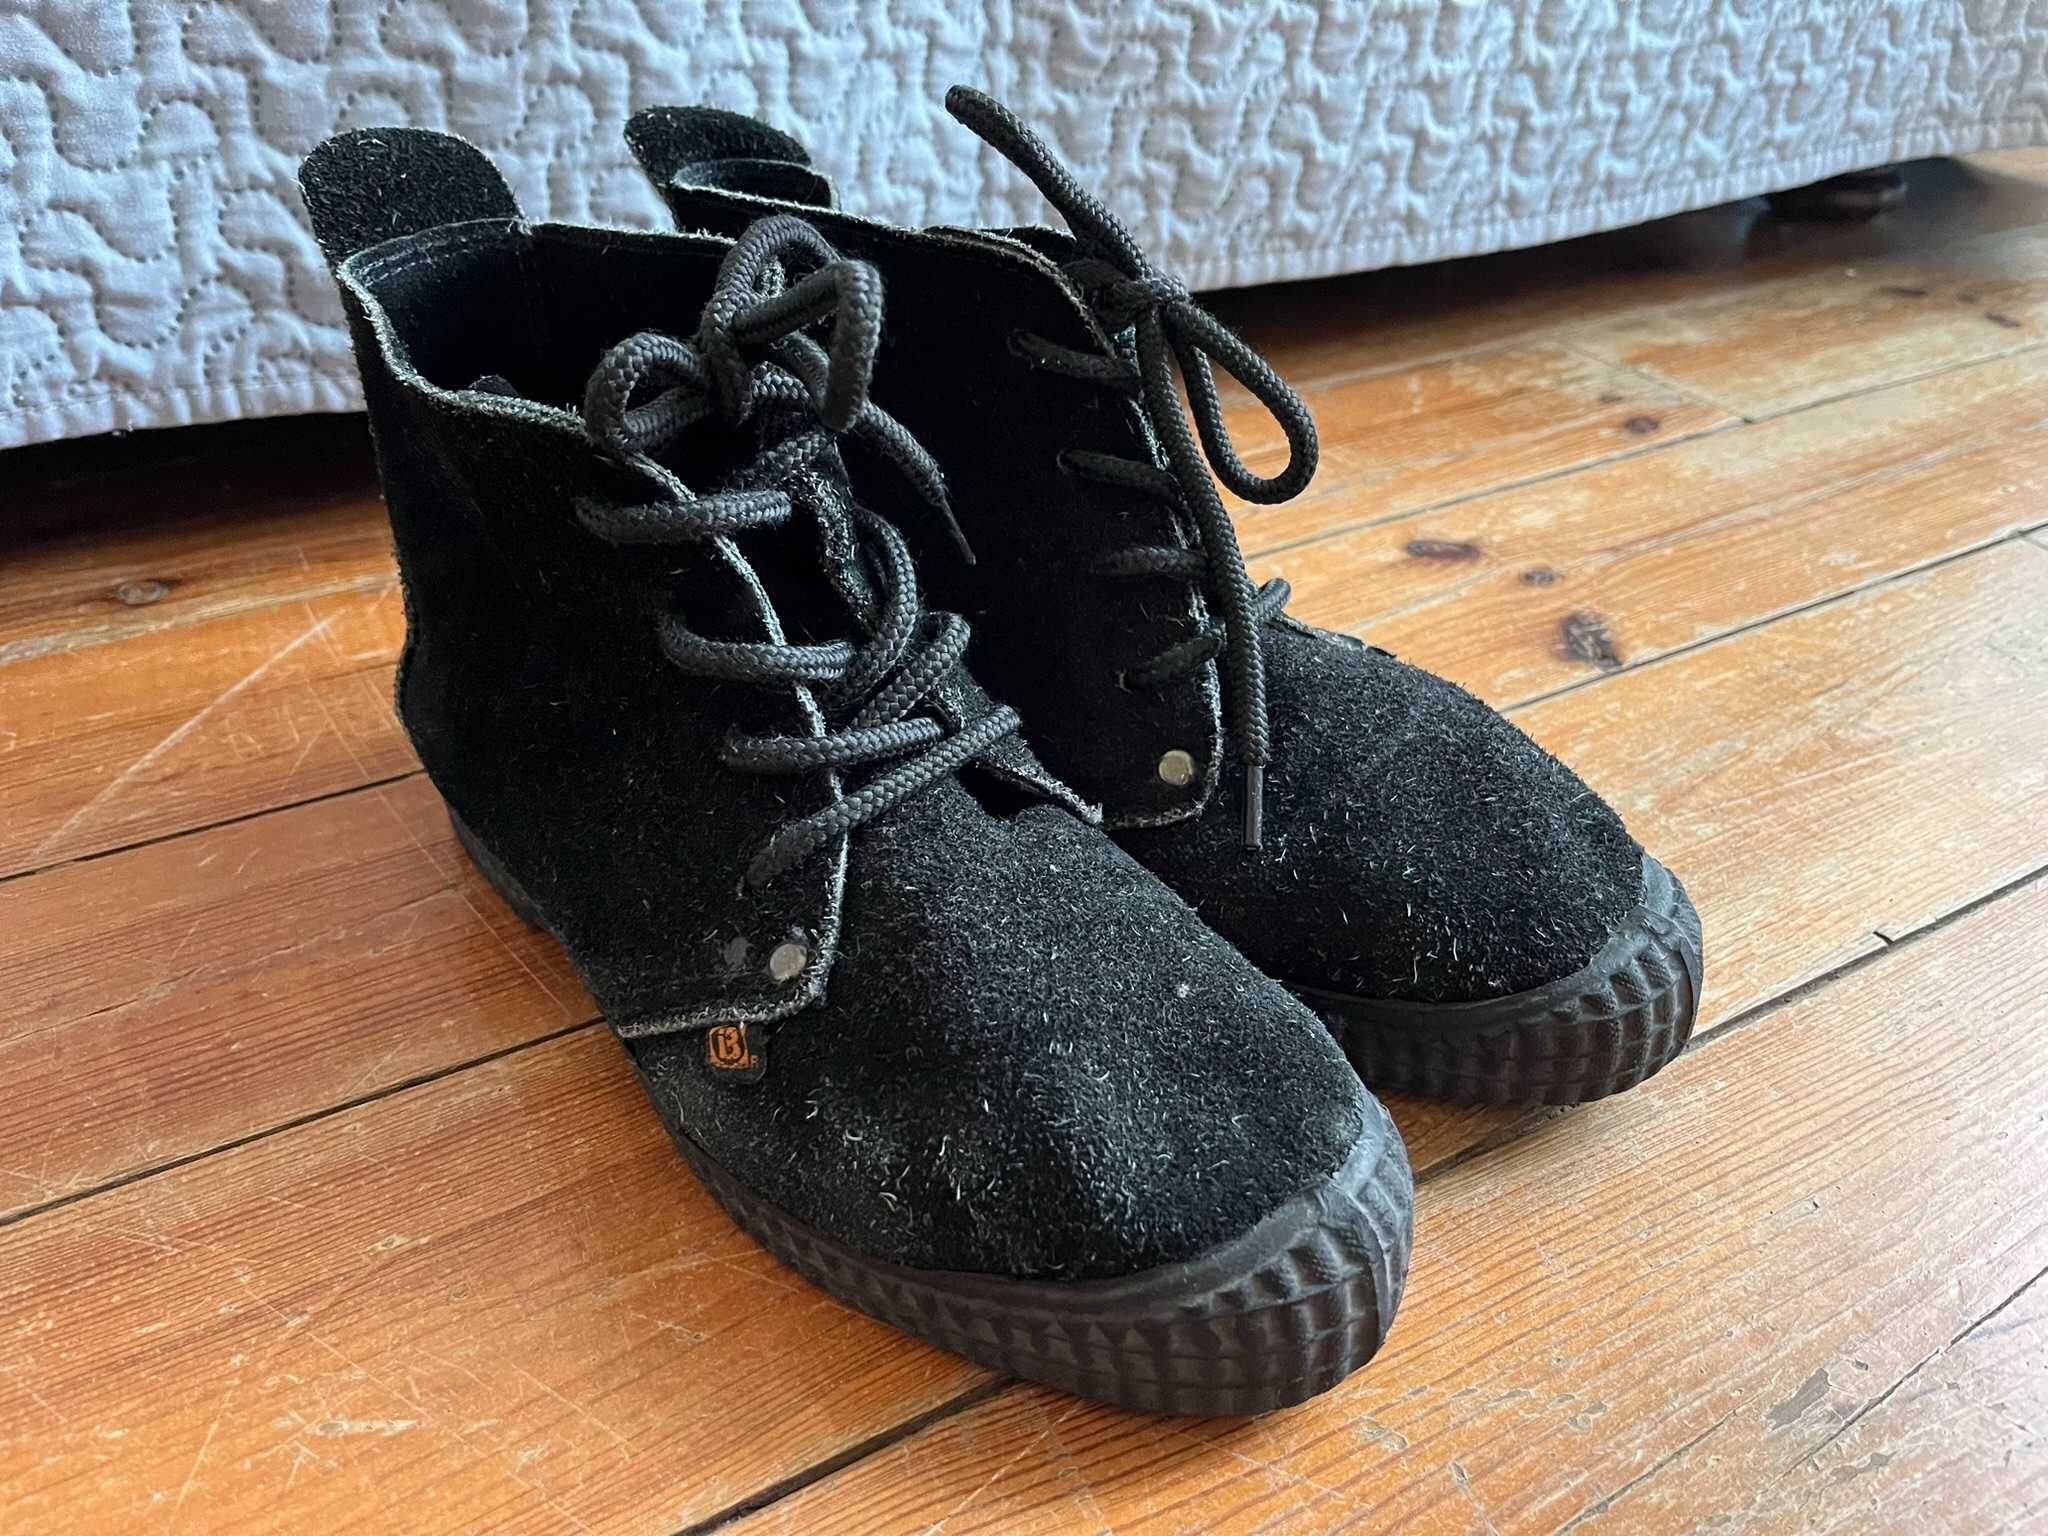 Sapatos de couro preto, tamanho 40, marca Bilsa da Costa Rica, unisex